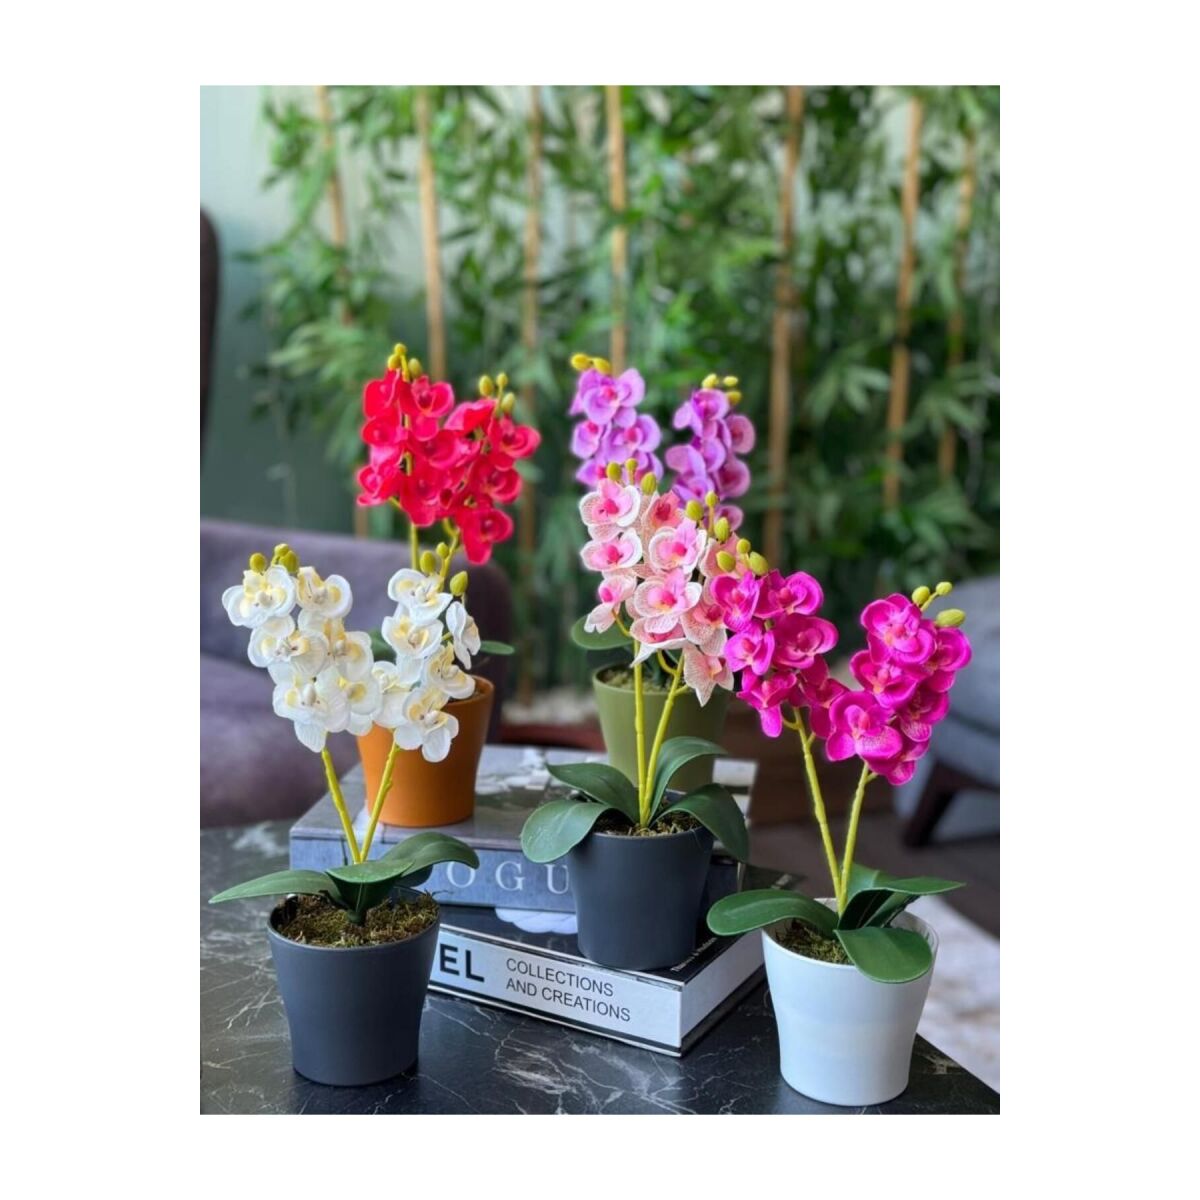 5Li Set Yapay Çiçek Orkide Renkli Saksıda Gerçekçi Doku Karışık Renkli 30Cm